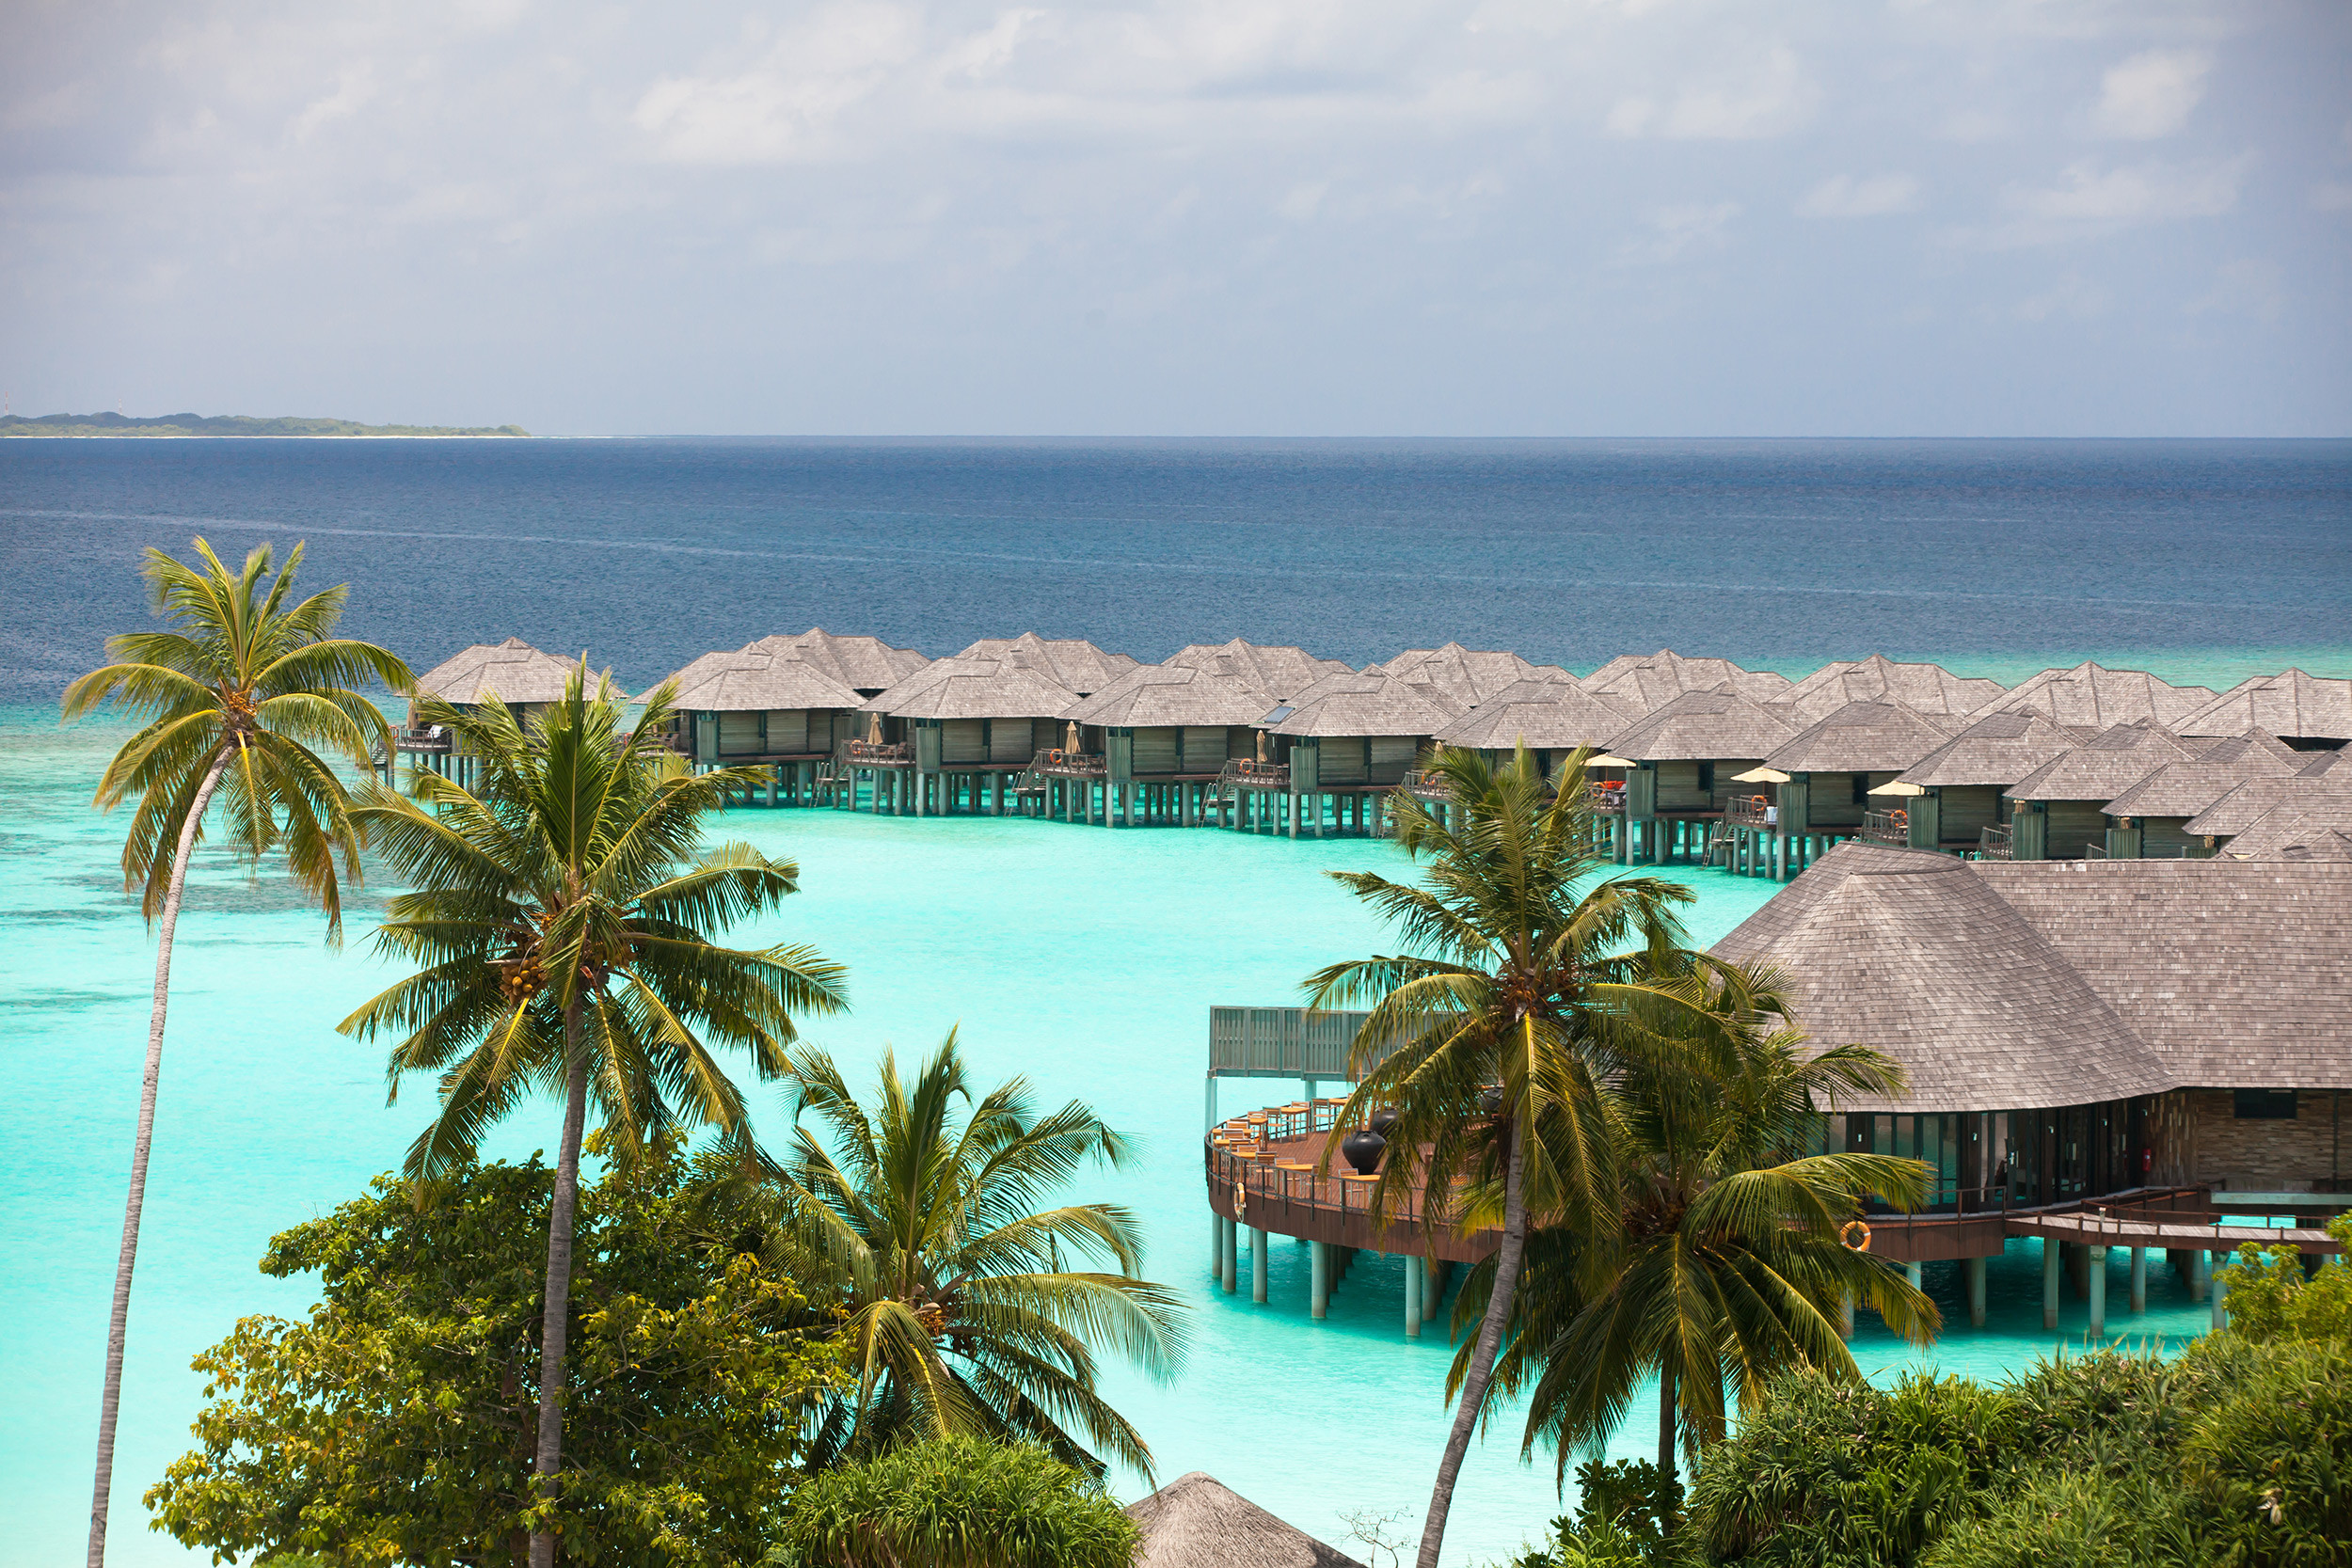 Luxury Resorts in Maldives Joins TTG’s Next Event, “Restart Travel”